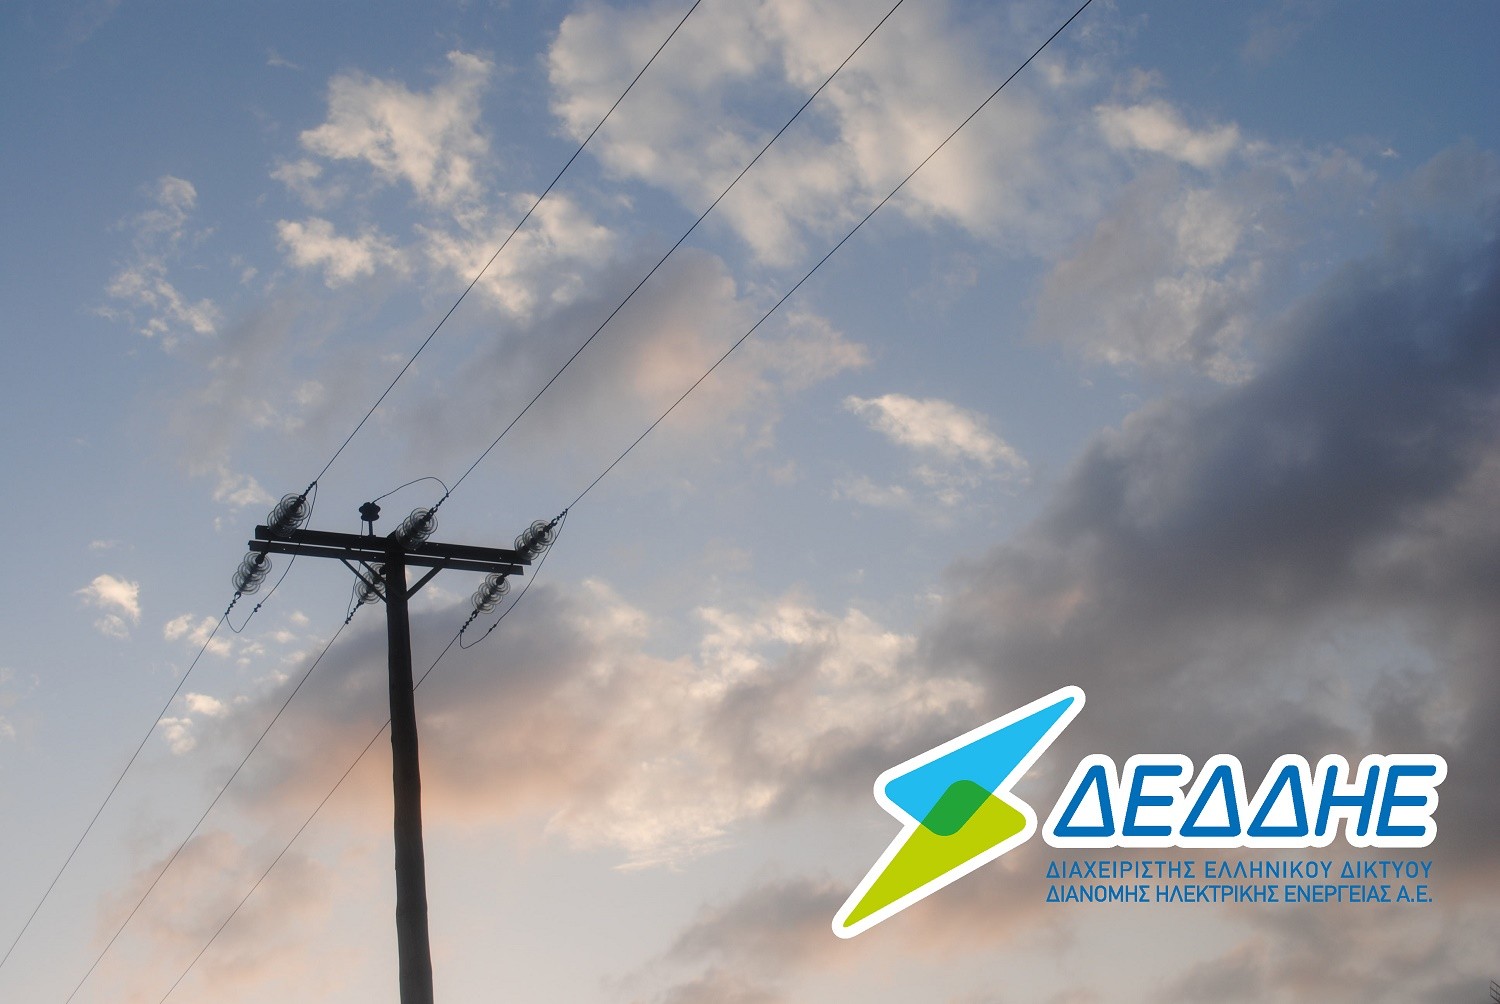 ΔΕΔΔΗΕ: Σε πορεία αποκατάστασης η ηλεκτροδότηση στις περιοχές της Εύβοιας και του Πηλίου